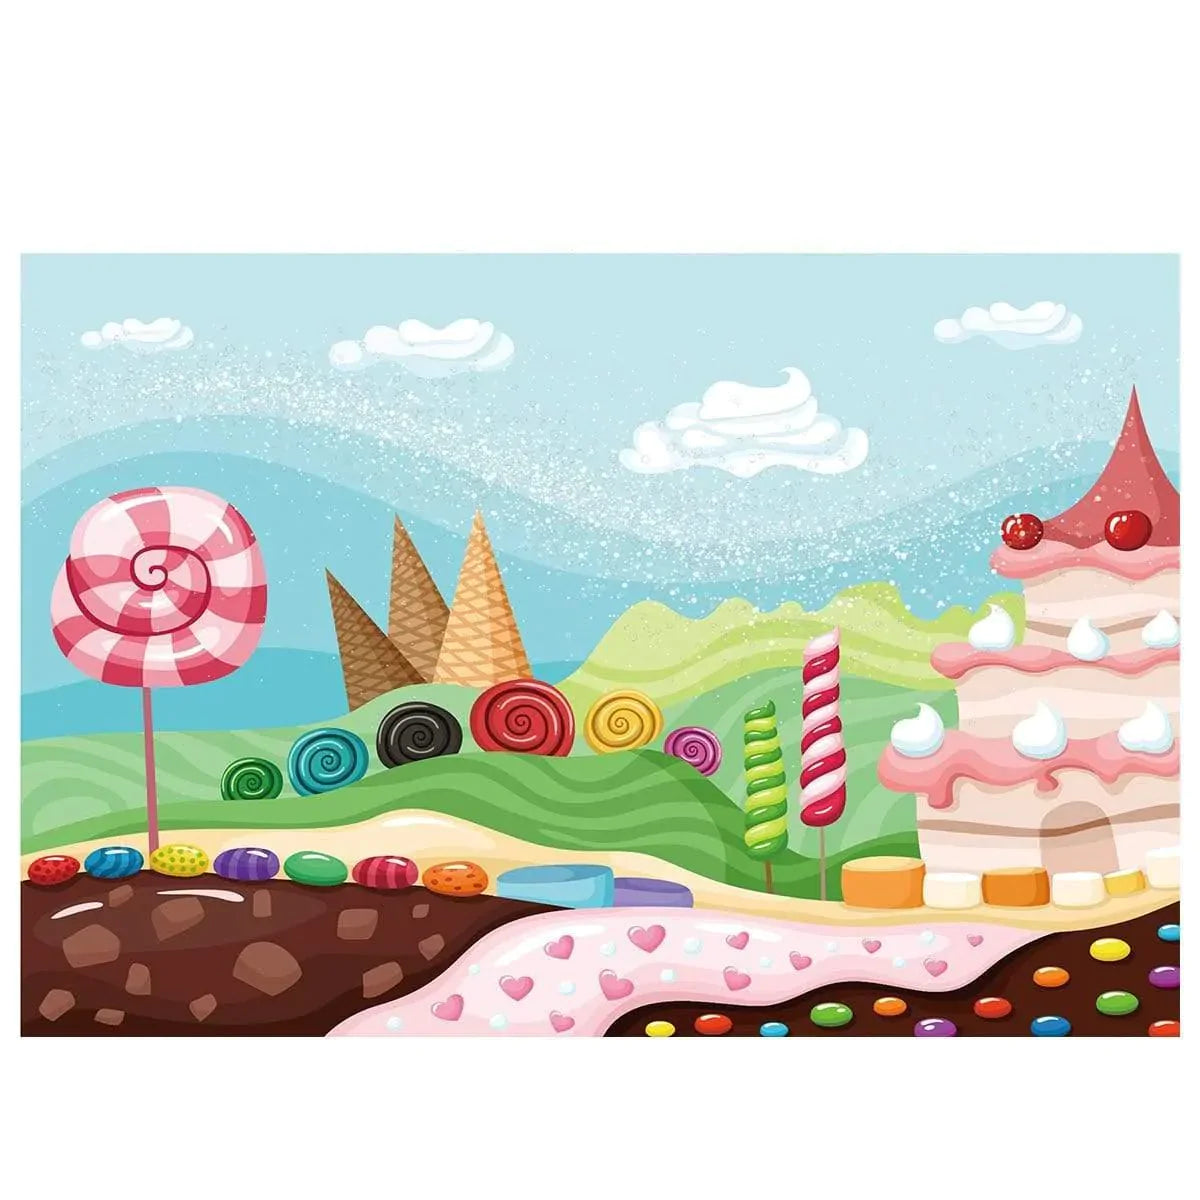 Allenjoy Background Candy Bar White Sugar Wind Sweet Cream Chocolate River Children Party - Allenjoystudio